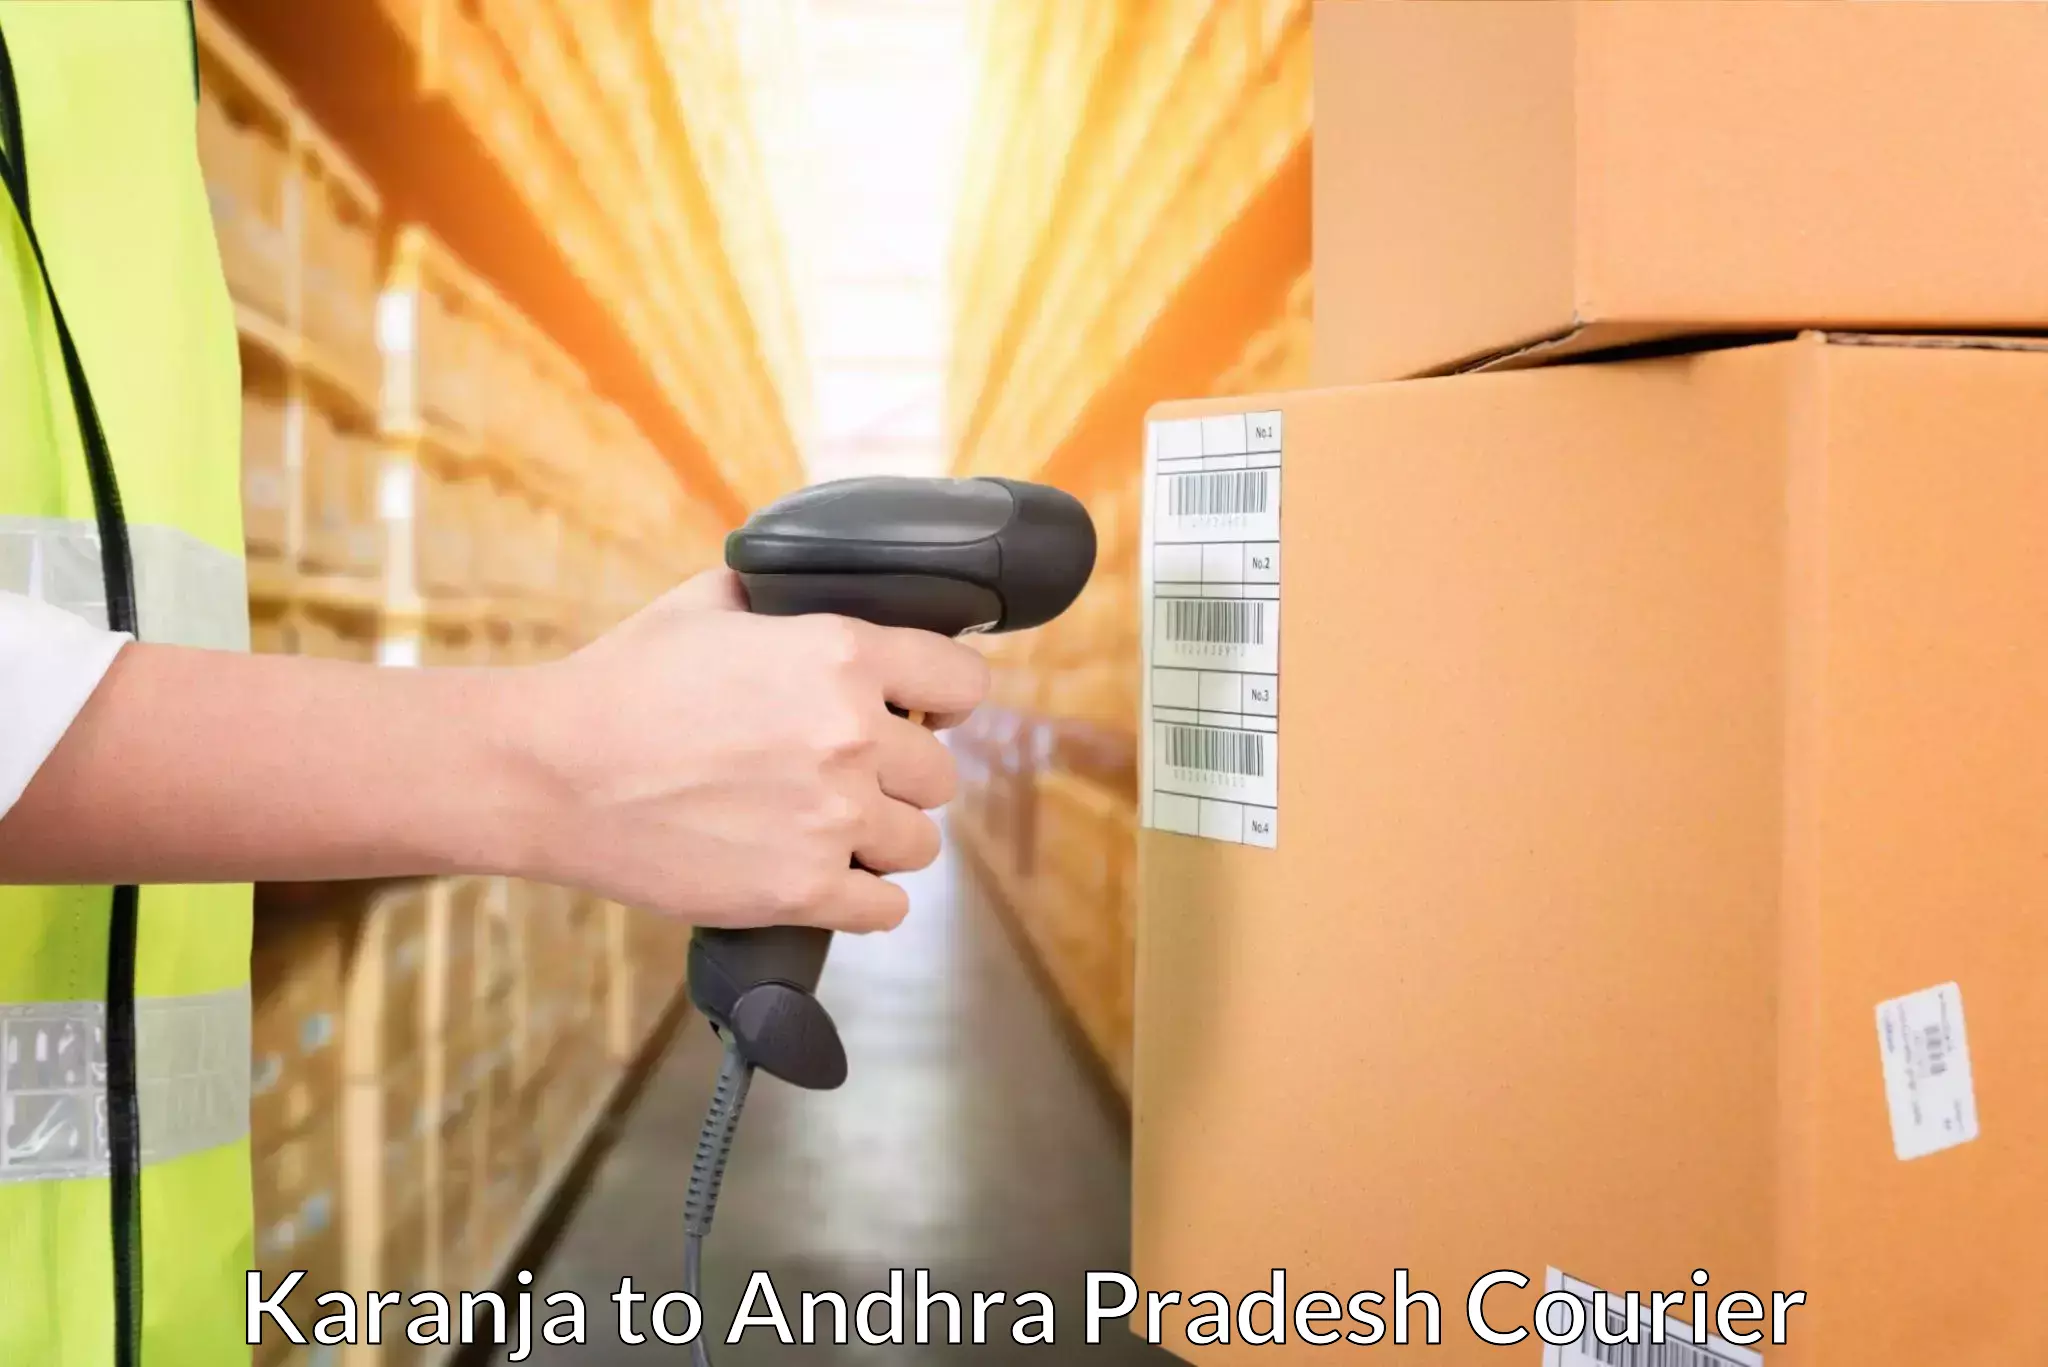 Optimized shipping services Karanja to Malikipuram